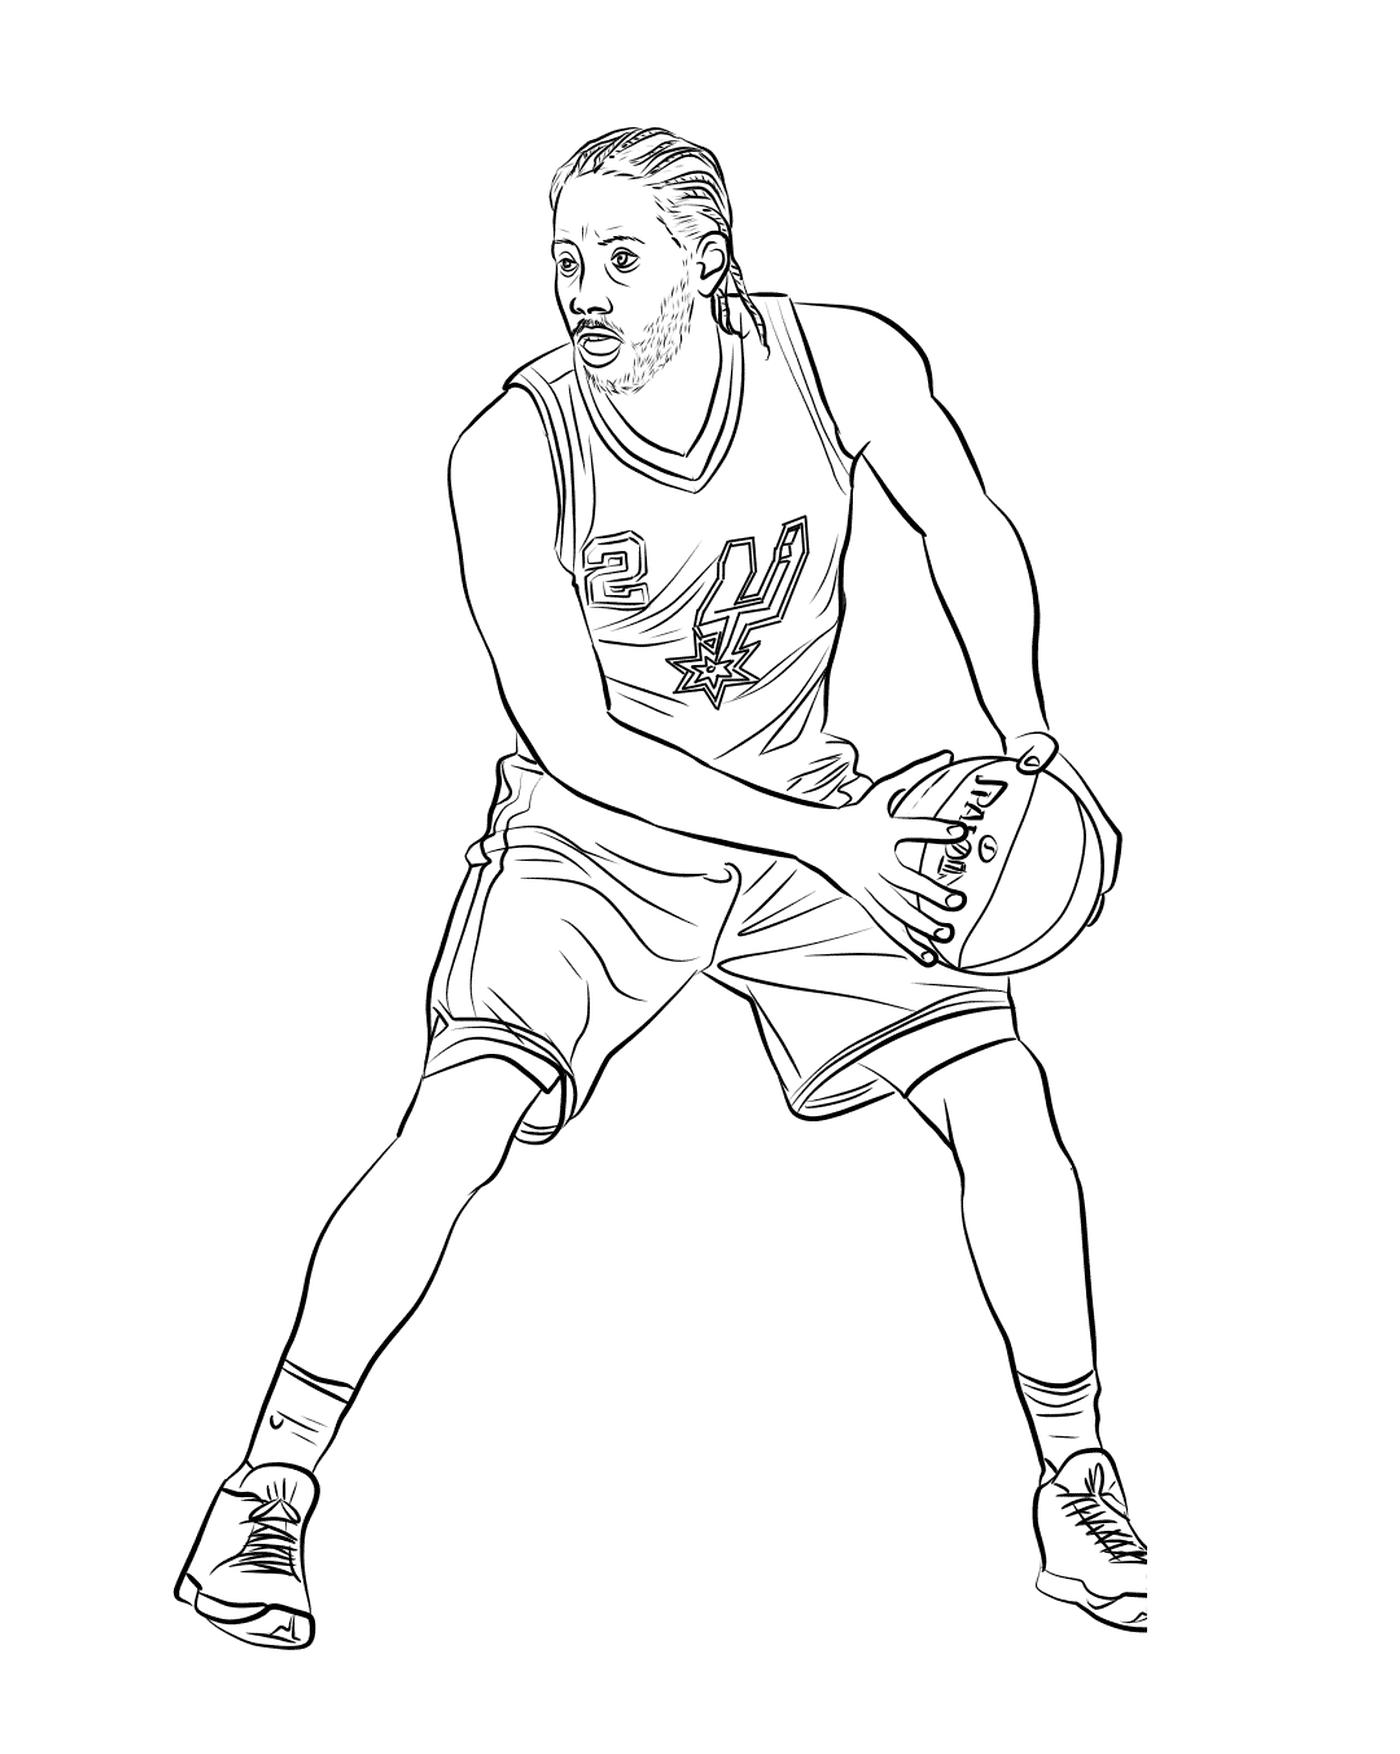  Kawhi Leonard, jugador de baloncesto 